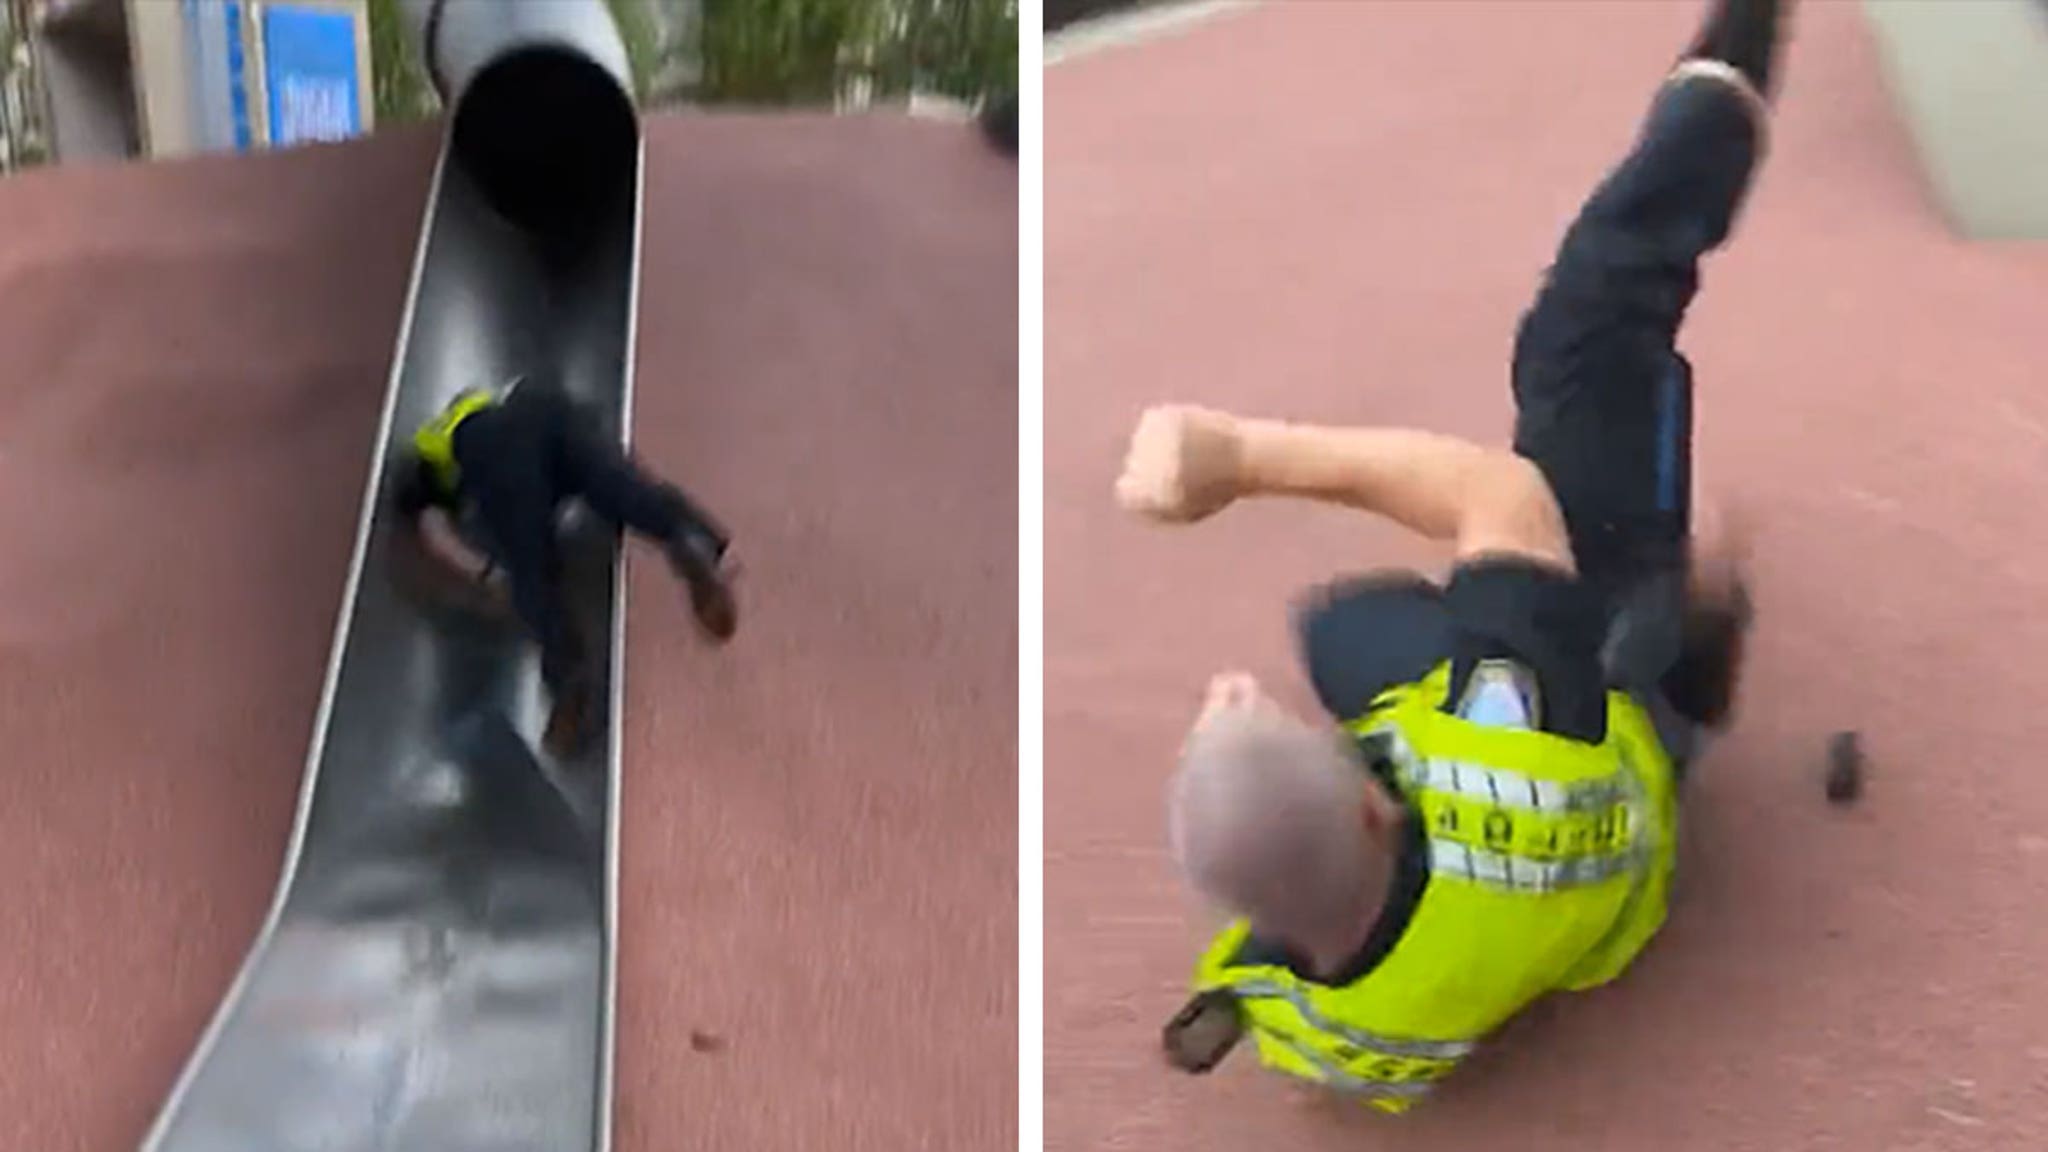 Boston Police Officer Injured Going Down Children’s Slide in Viral Video